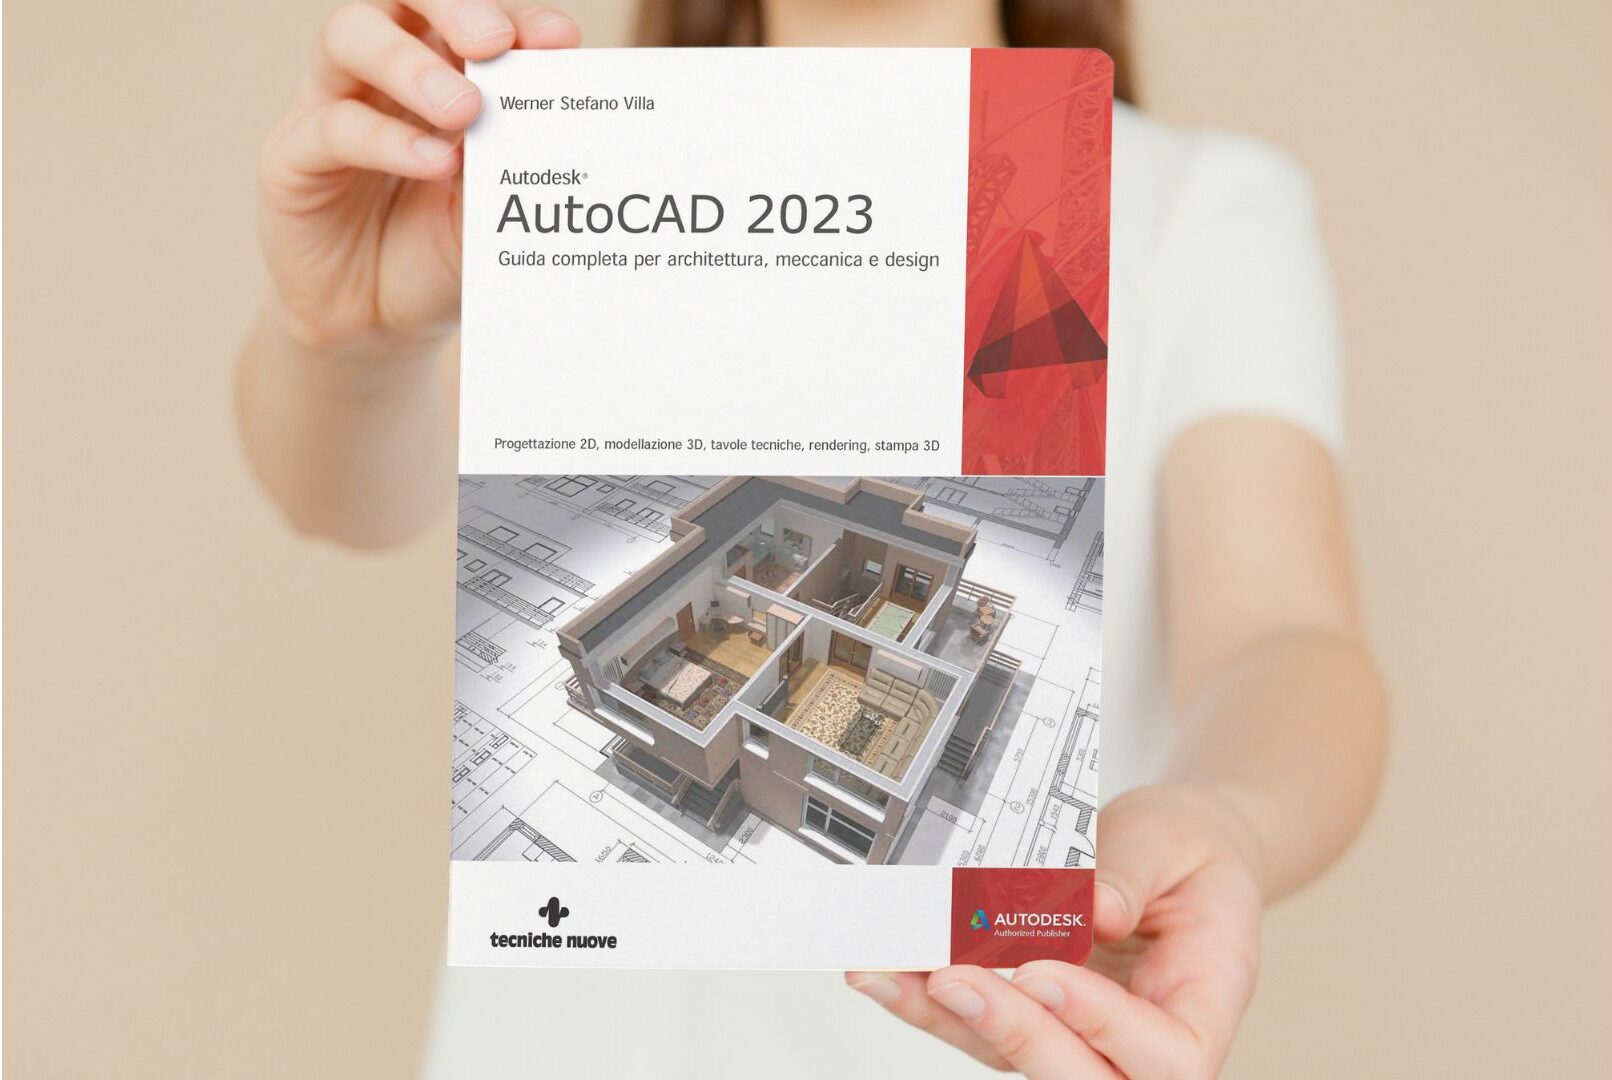 Autodesk® AutoCAD 2023 - Guida completa per architettura, meccanica e design